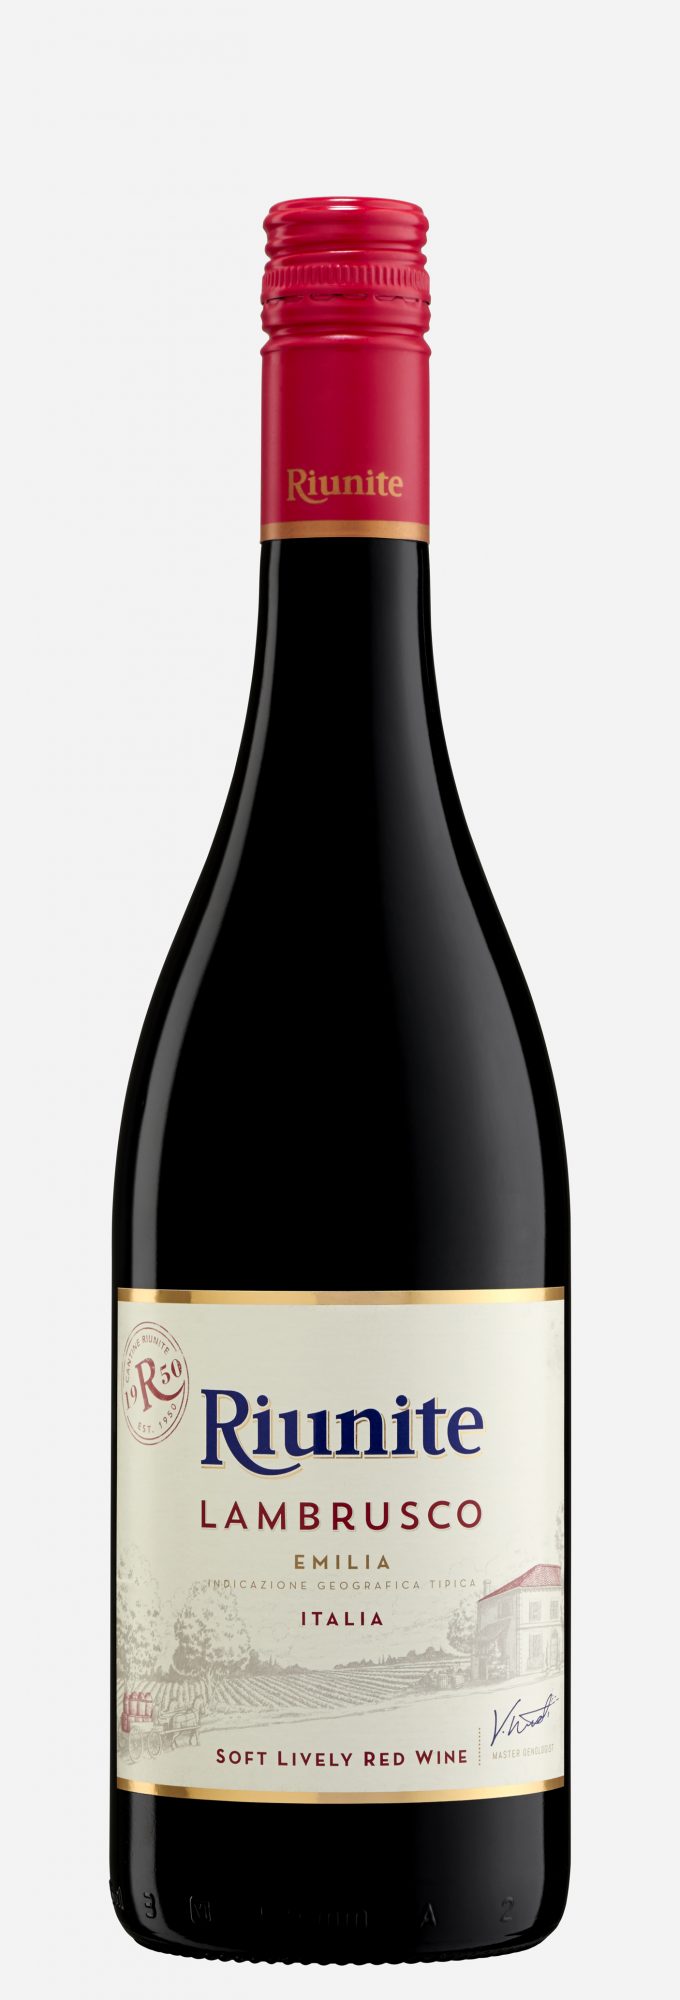 Riunite-Lambrusco-affordable-wine.jpg